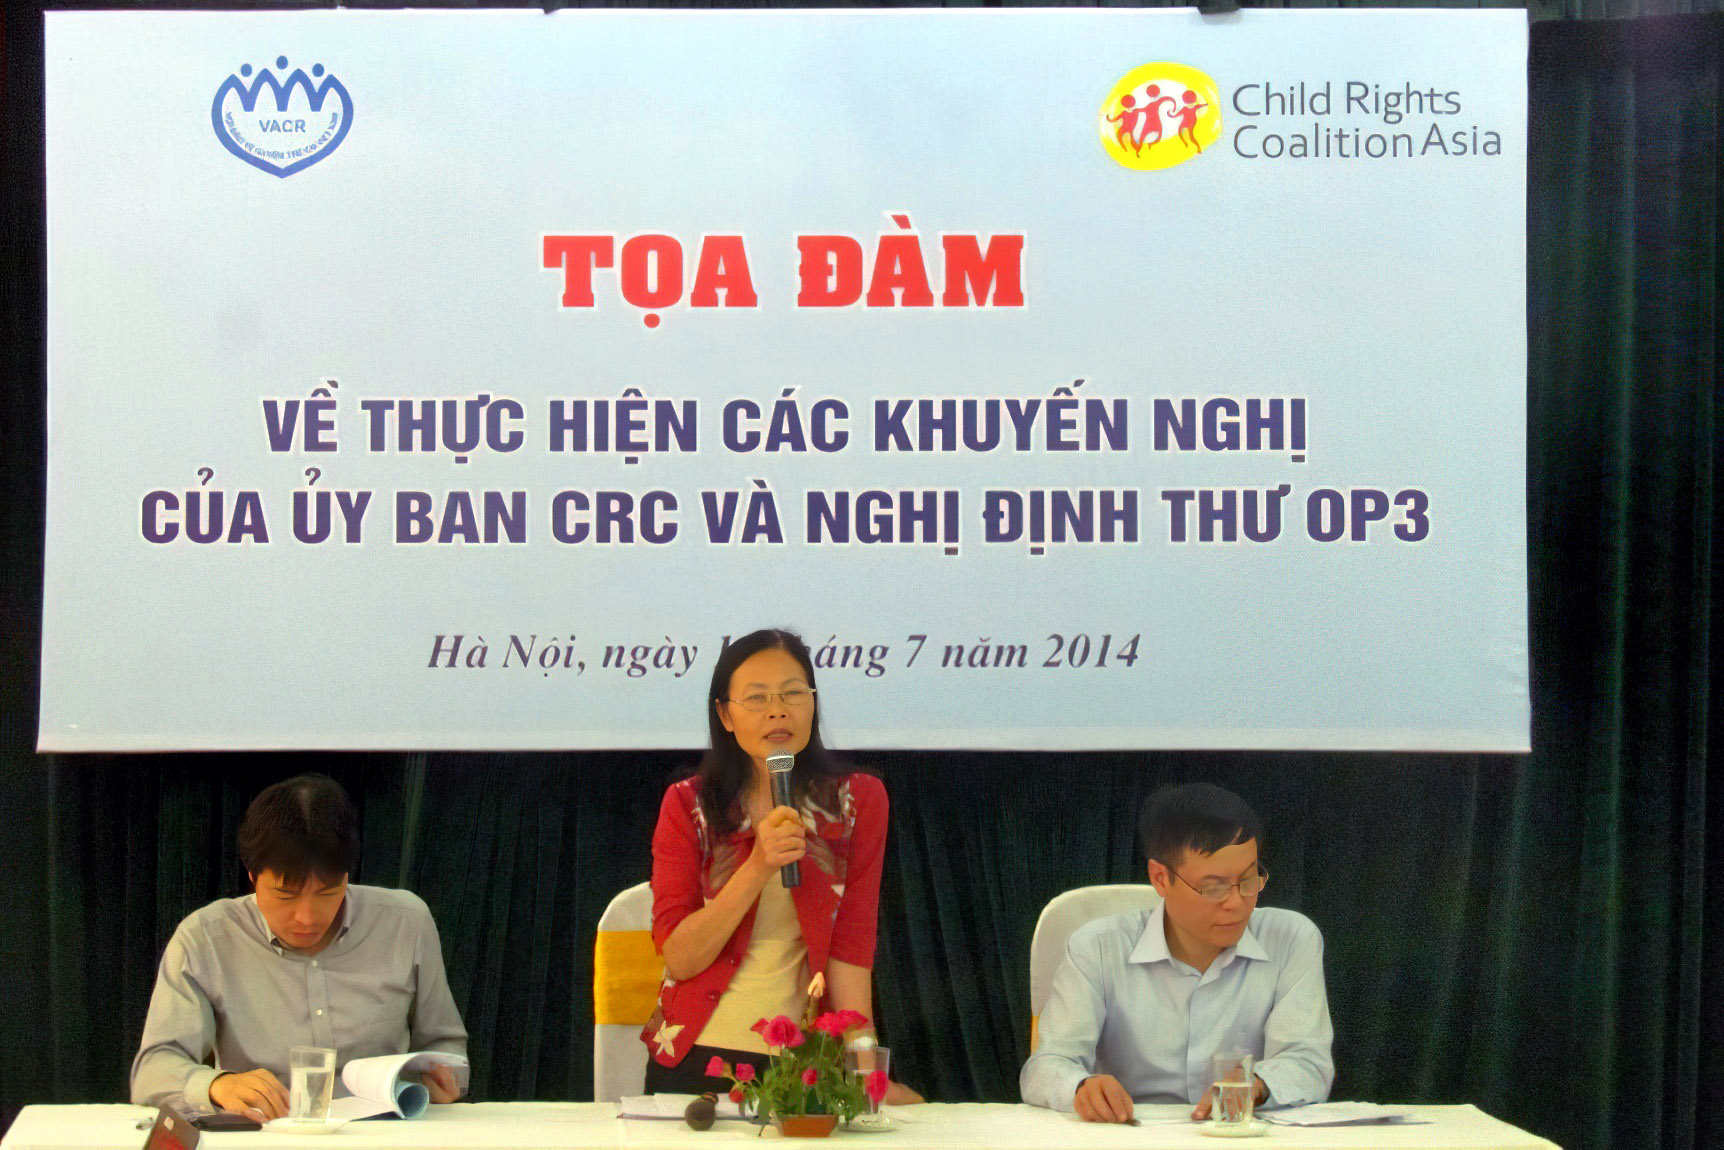 Phó Chủ tịch Trần Thị Mai Hương điều hành tại Tọa đàm về thực hiện các Khuyến nghị của Ủy ban Quyền trẻ em và Nghị định thư OP3 năm 2014